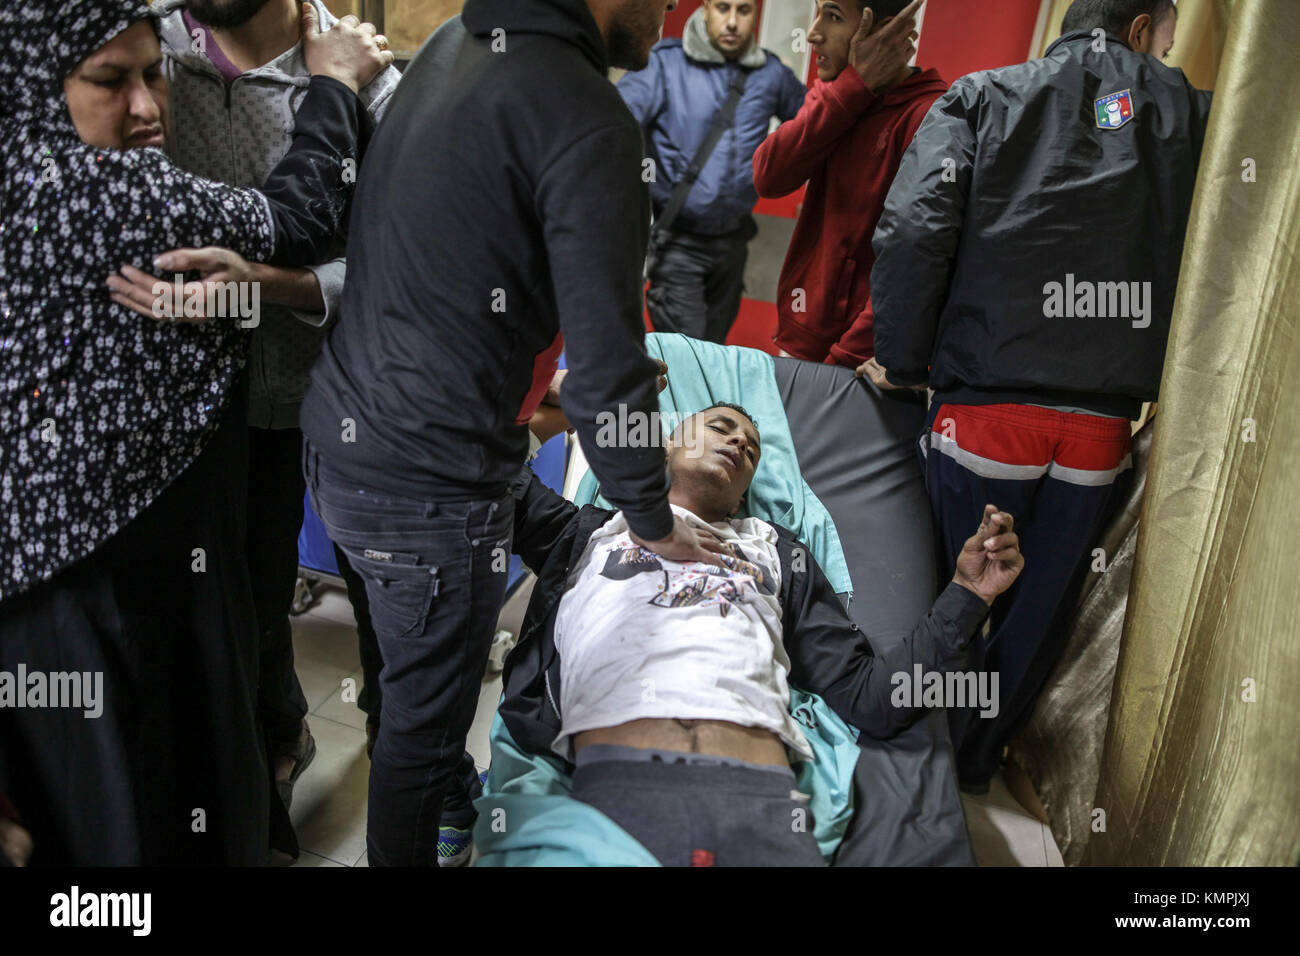 Un homme qui s'est blessé lors d'une attaque aérienne israélienne à Gaza est présenté dans un hôpital de Beit Lahia, dans le nord de la bande de Gaza, 08 décembre 2017. fractions palestiniennes ont appelé à une journée de la colère à la suite de la reconnaissance de Jérusalem comme capitale d'Israël par le président américain, Trump. photo : wissam nassar/dpa Banque D'Images